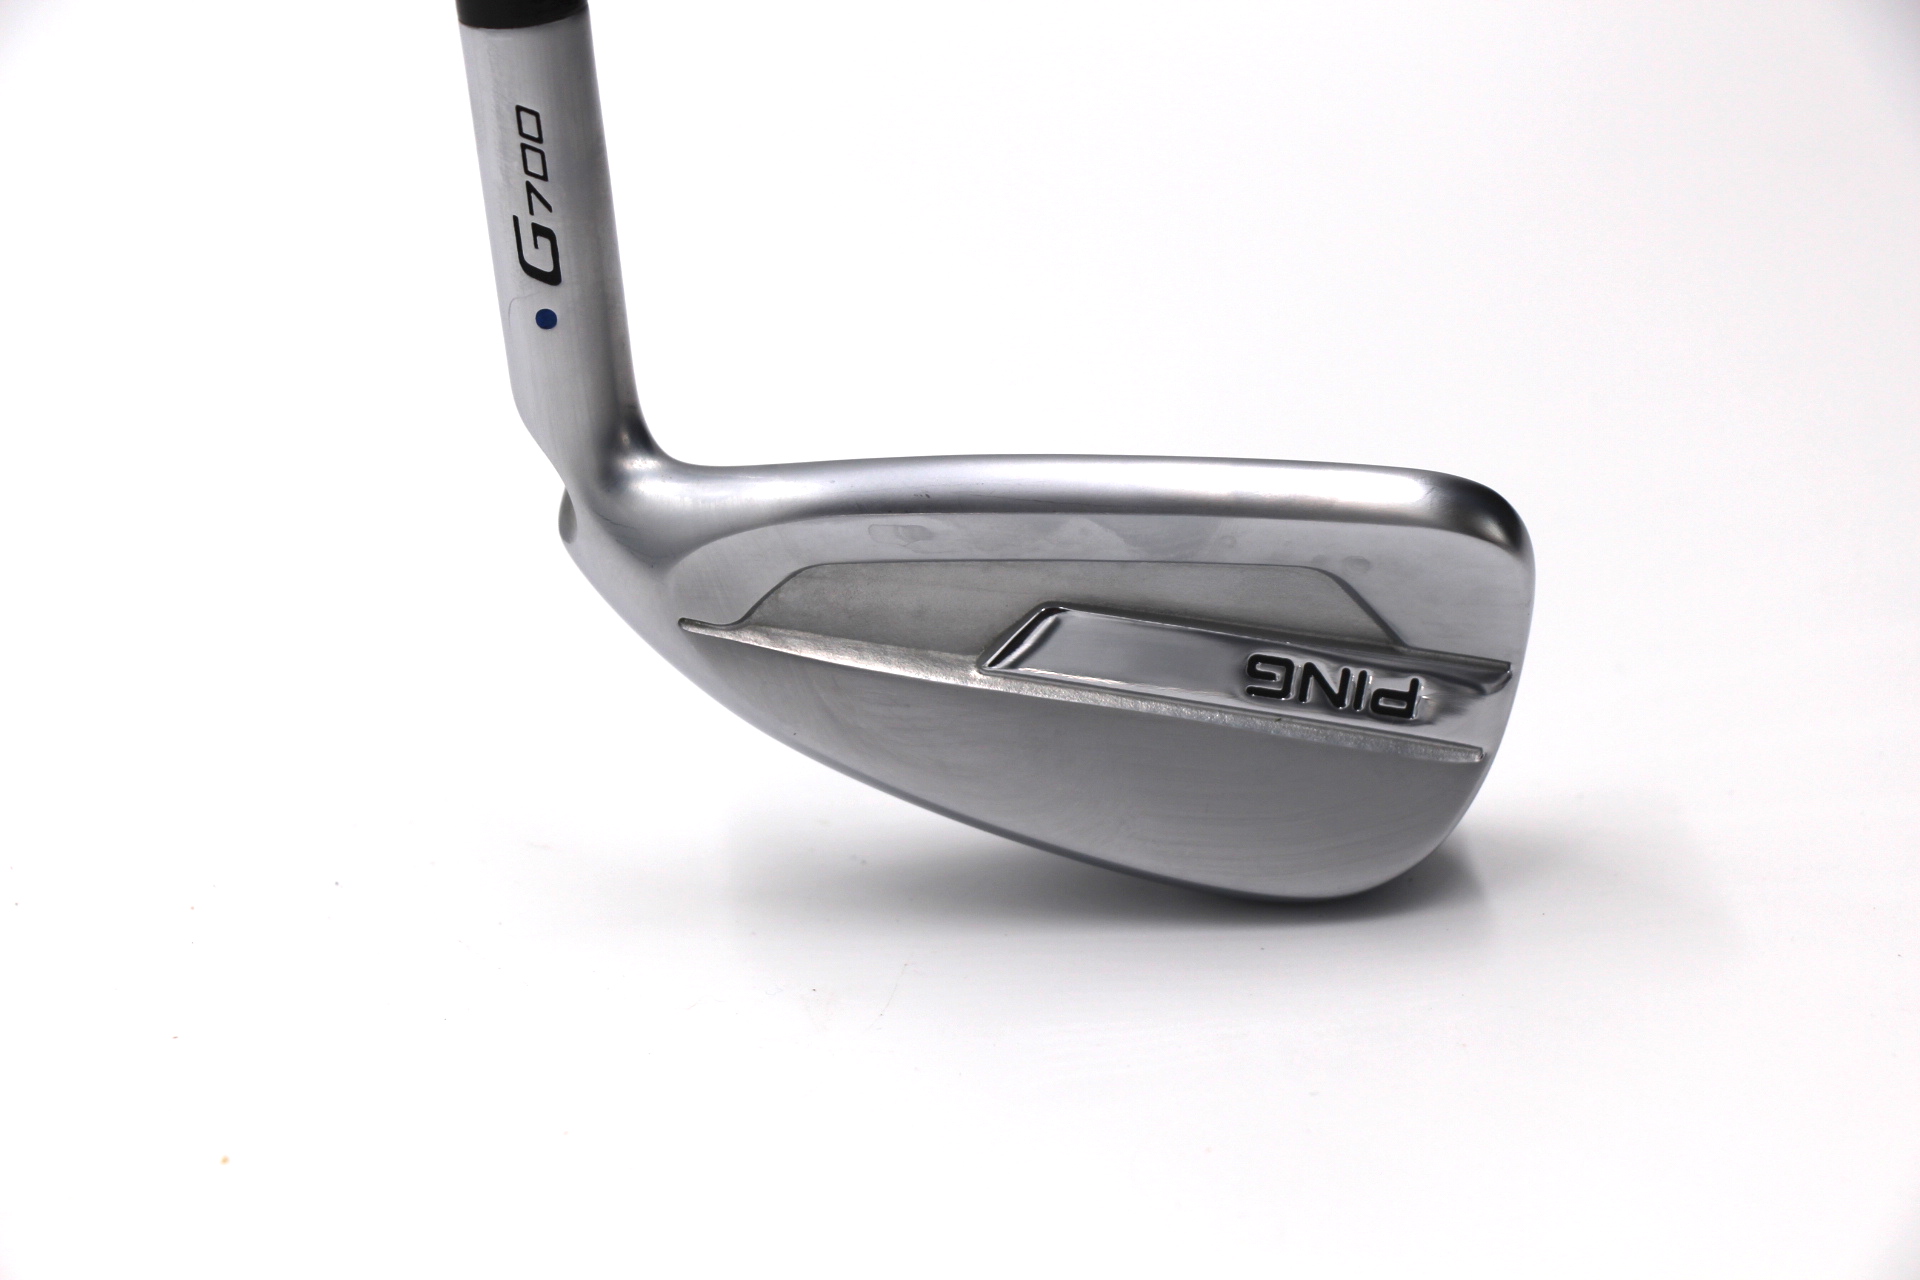 Ping G700 Iron Set - Golf Geeks